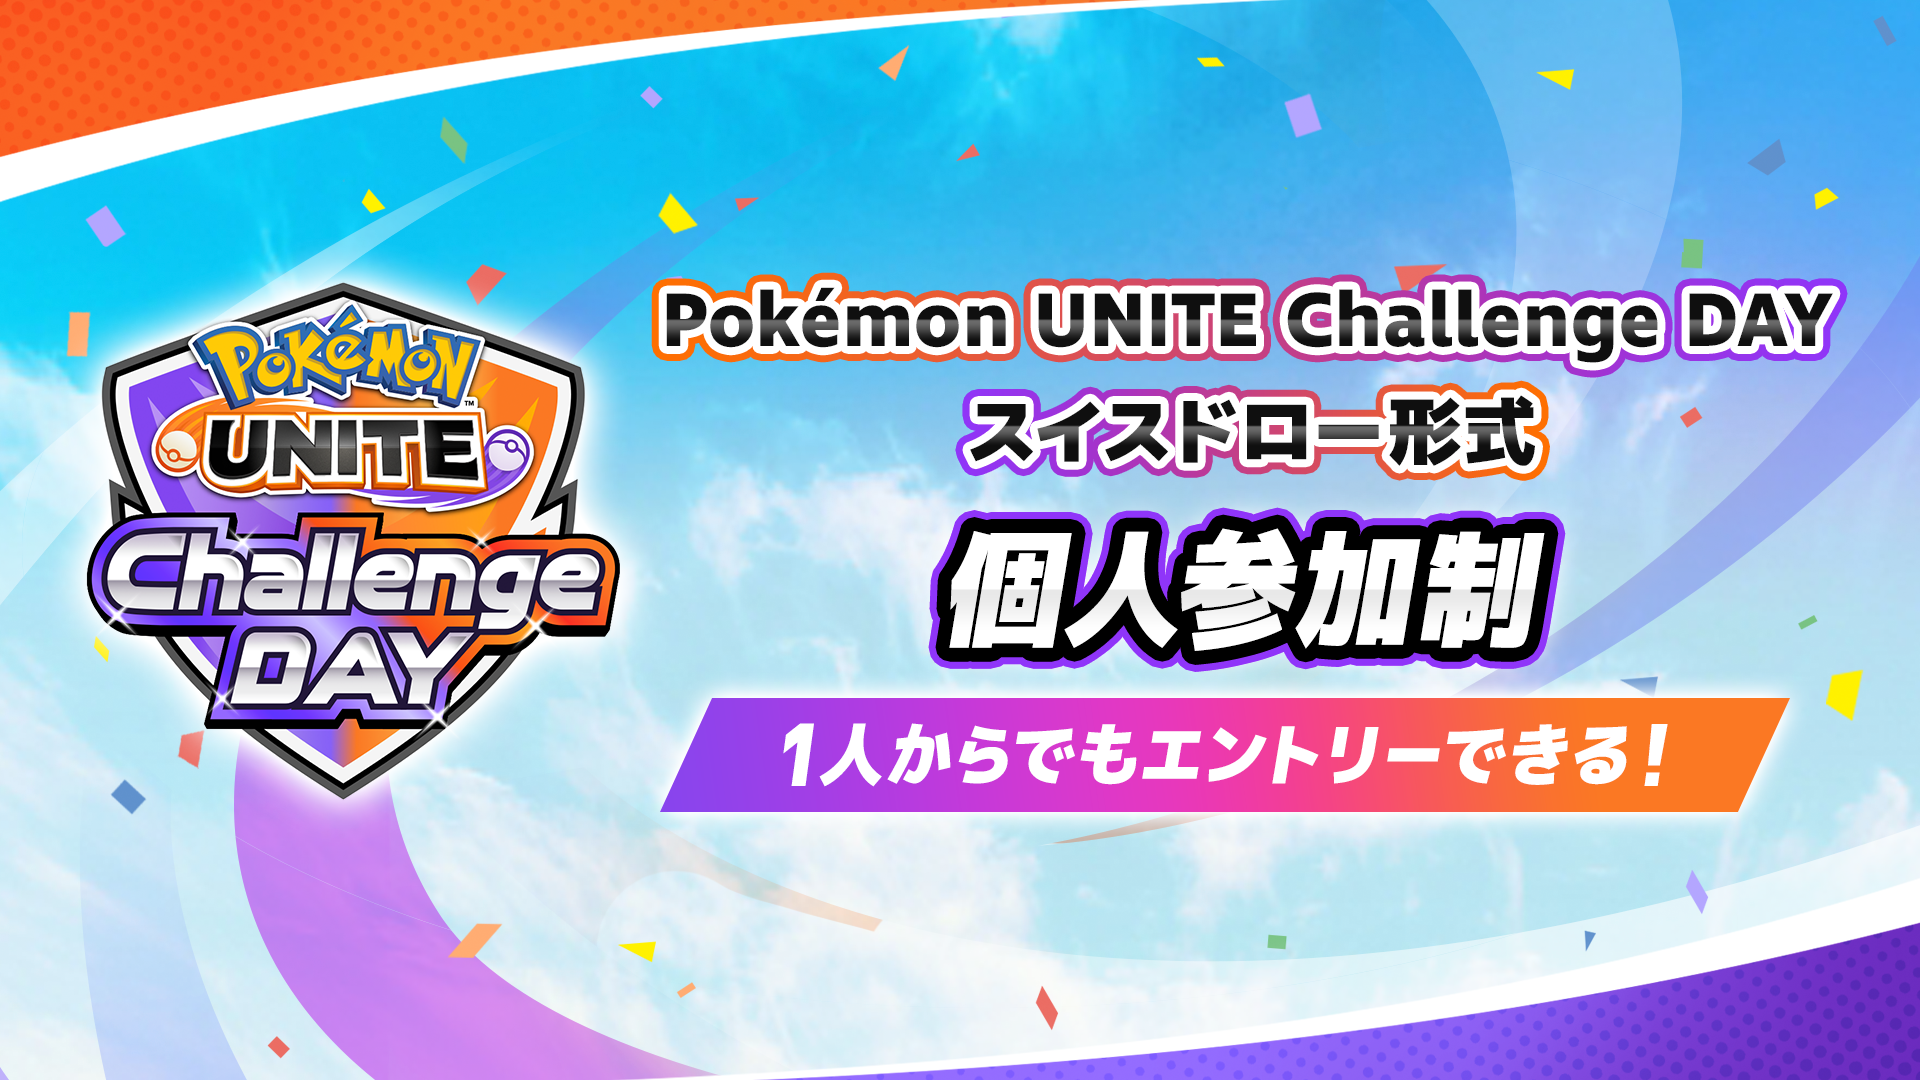 Pokemon UNITE Challenge DAY 2.18 個人参加制 スイスドロー形式 午前の部・午後の部 計3イベント開催！